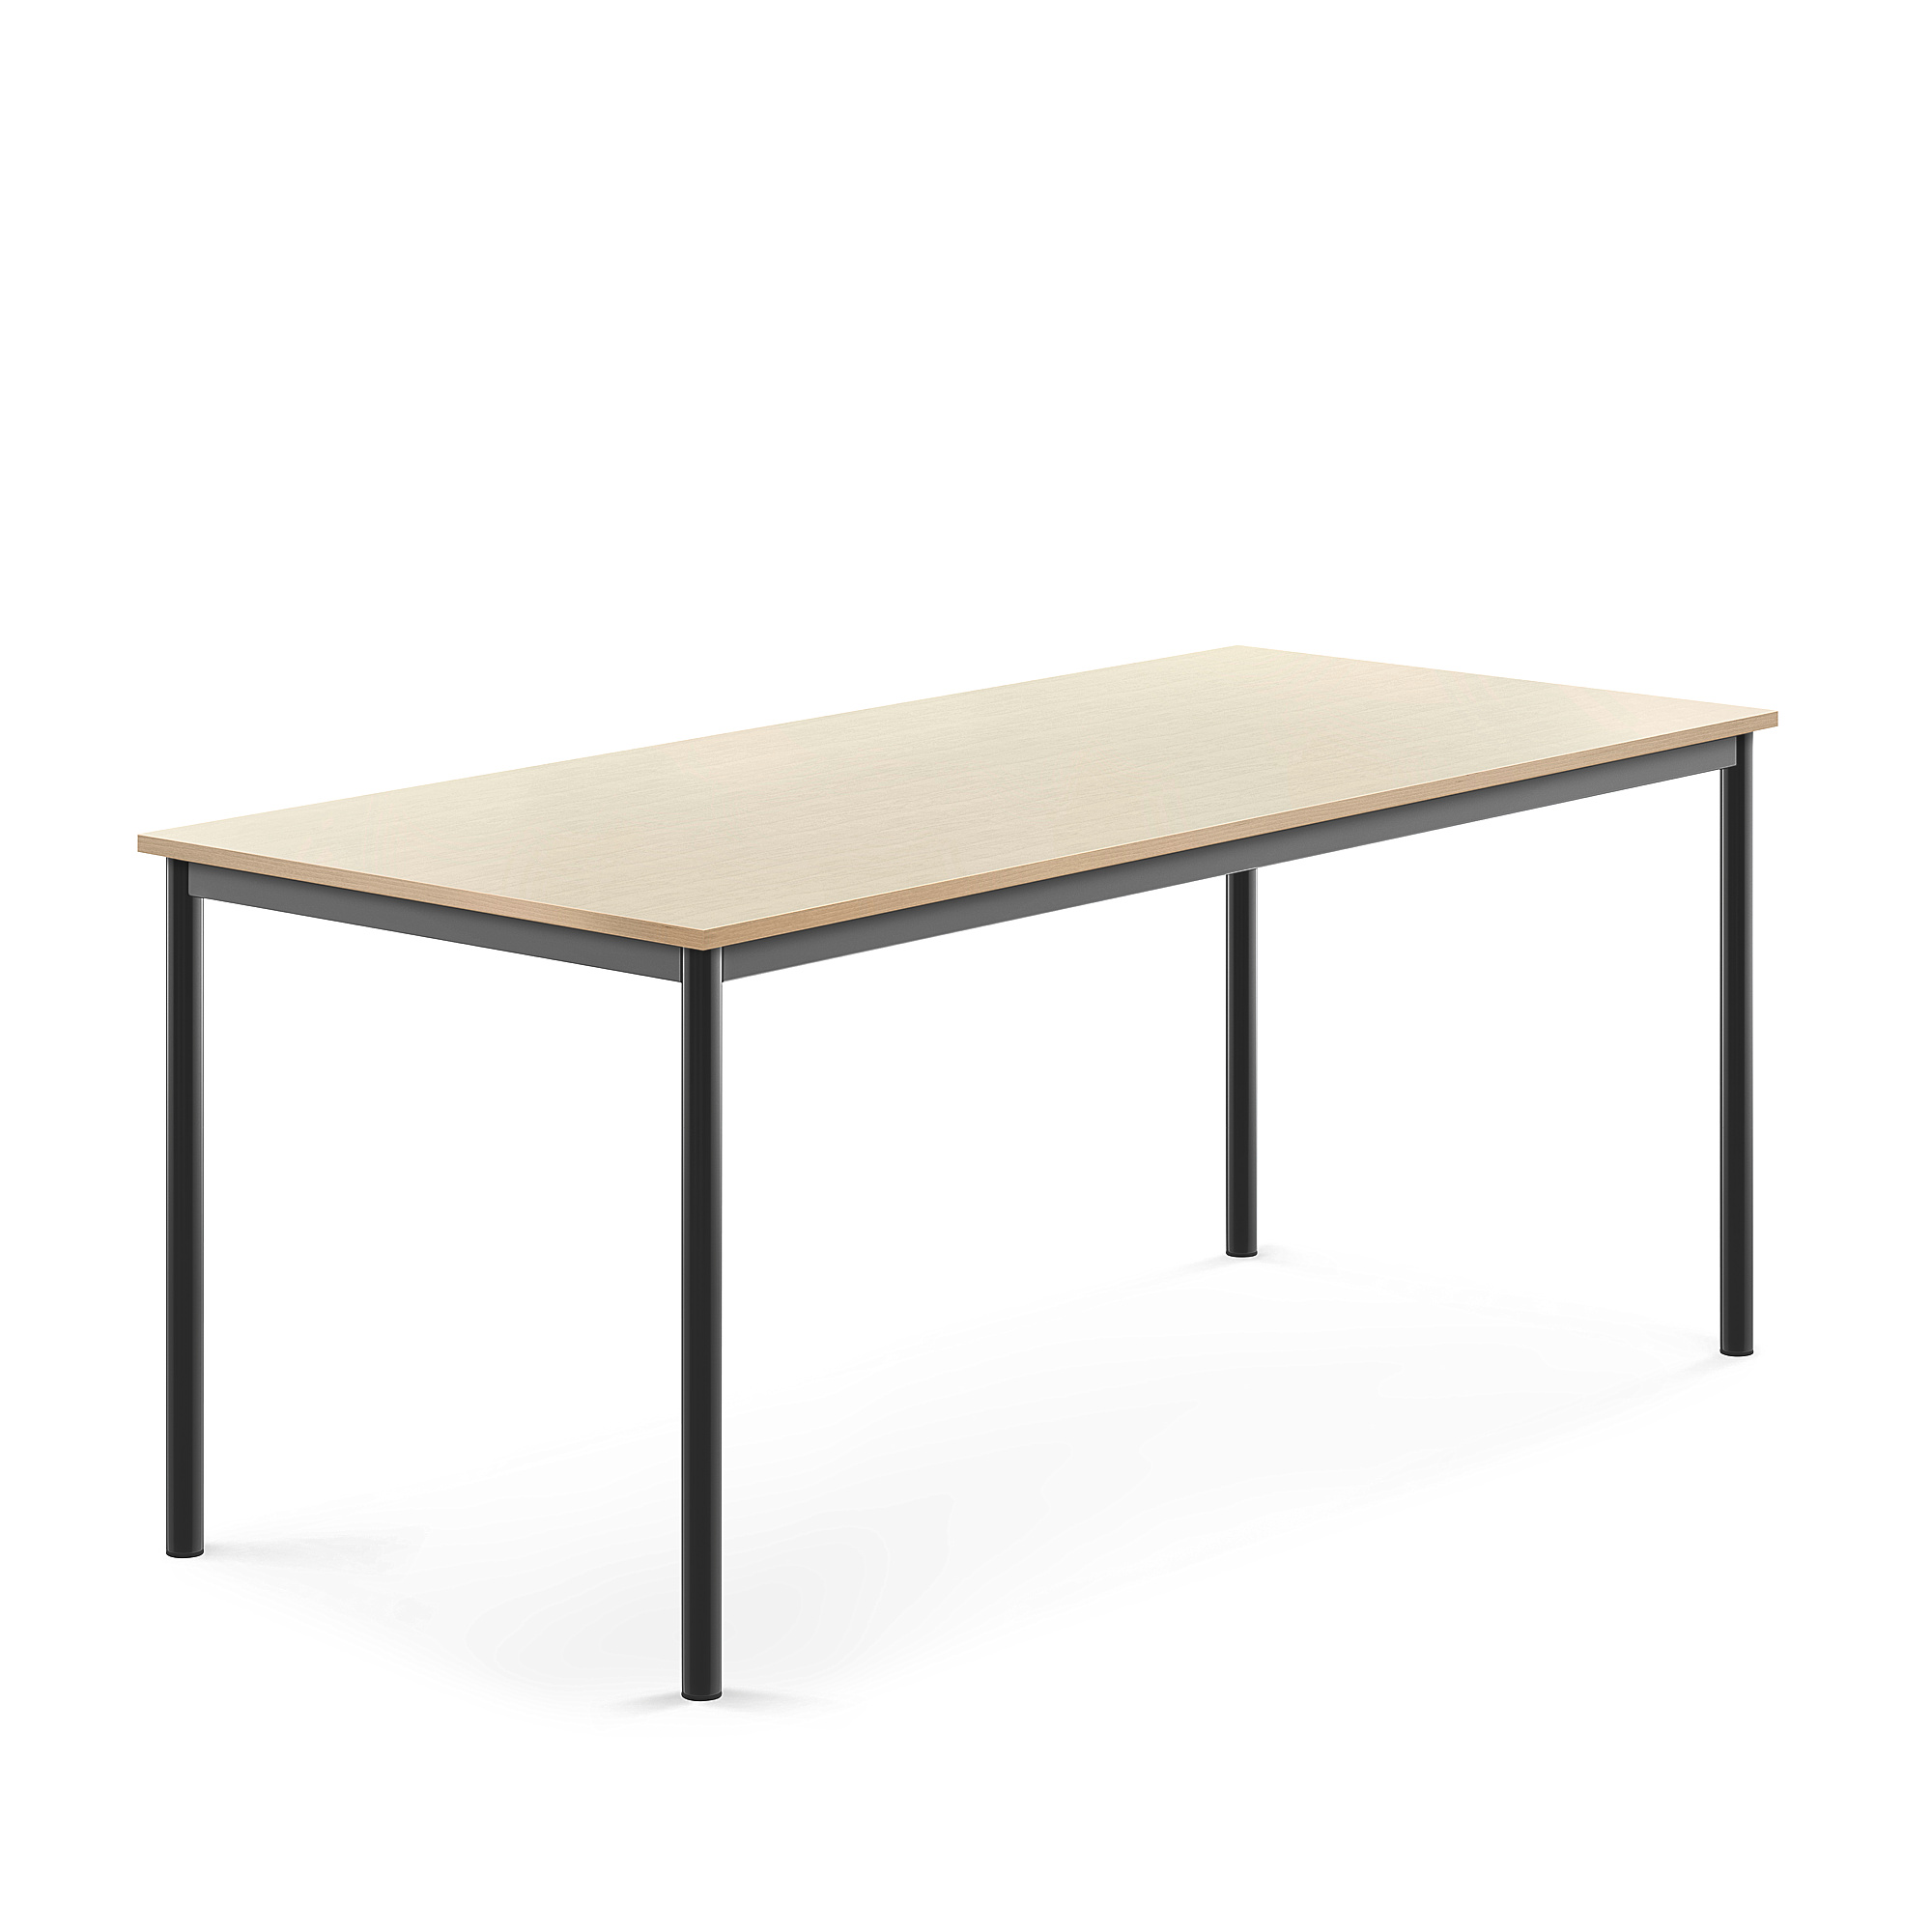 Stůl SONITUS, 1800x800x720 mm, antracitově šedé nohy, HPL deska tlumící hluk, bříza